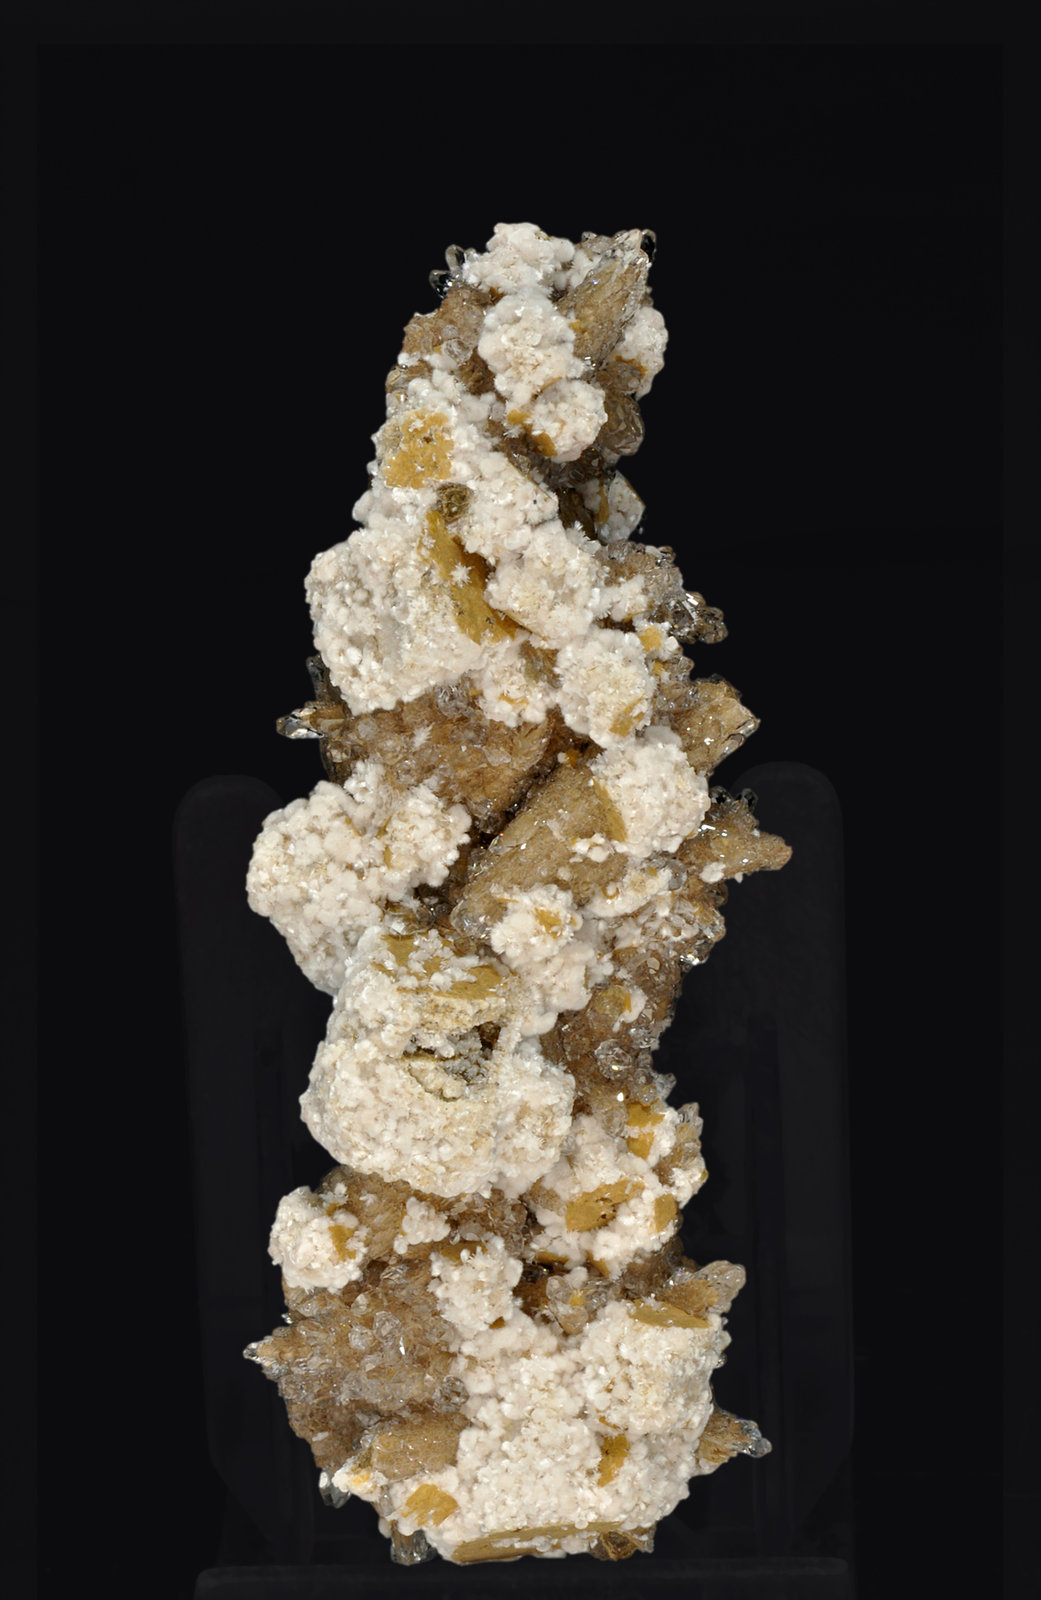 specimens/s_imagesR1/Oyelite-EC56R1f.jpg